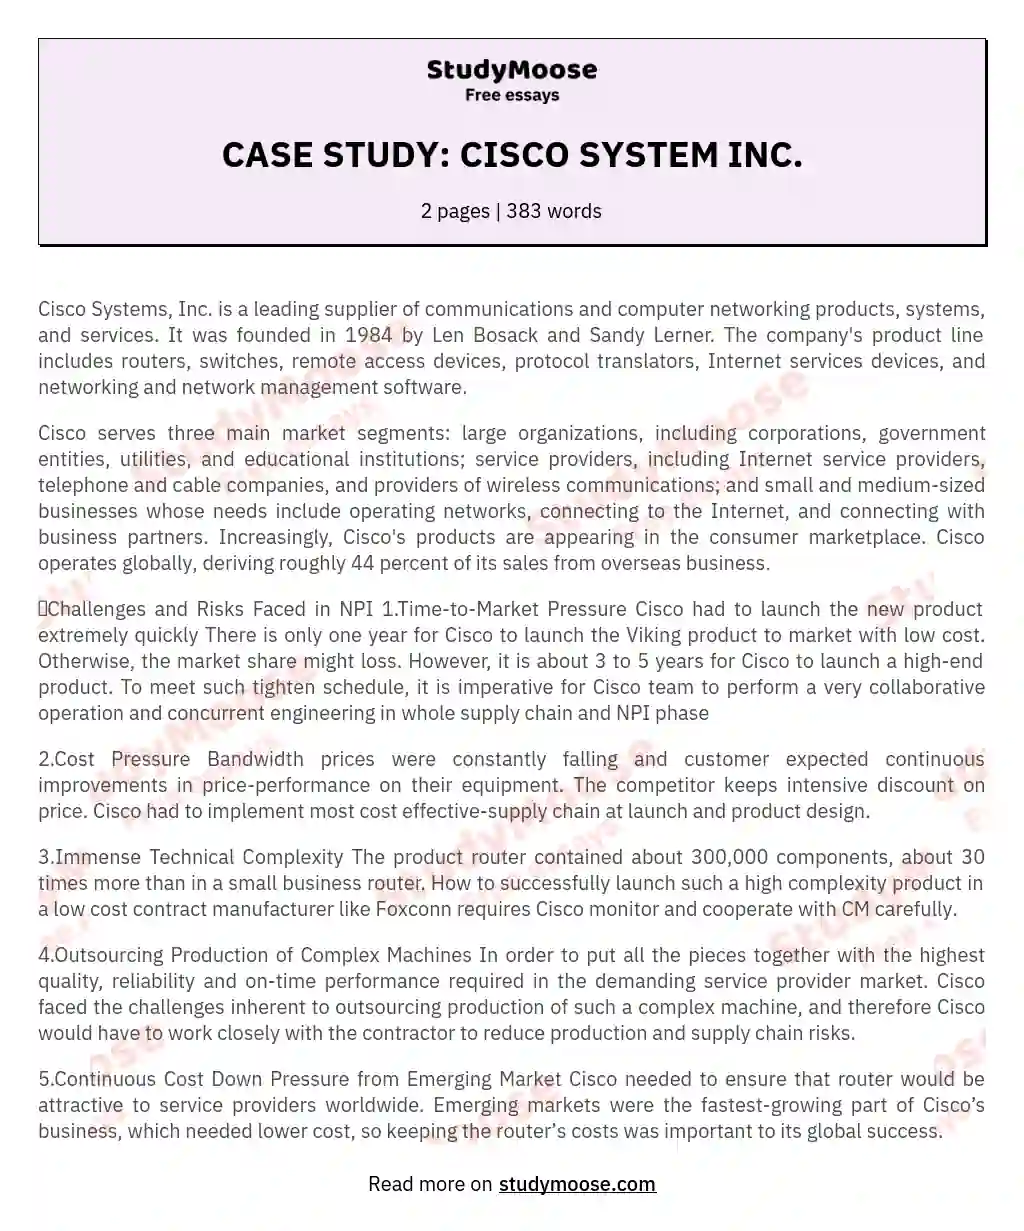 CASE STUDY: CISCO SYSTEM INC. essay